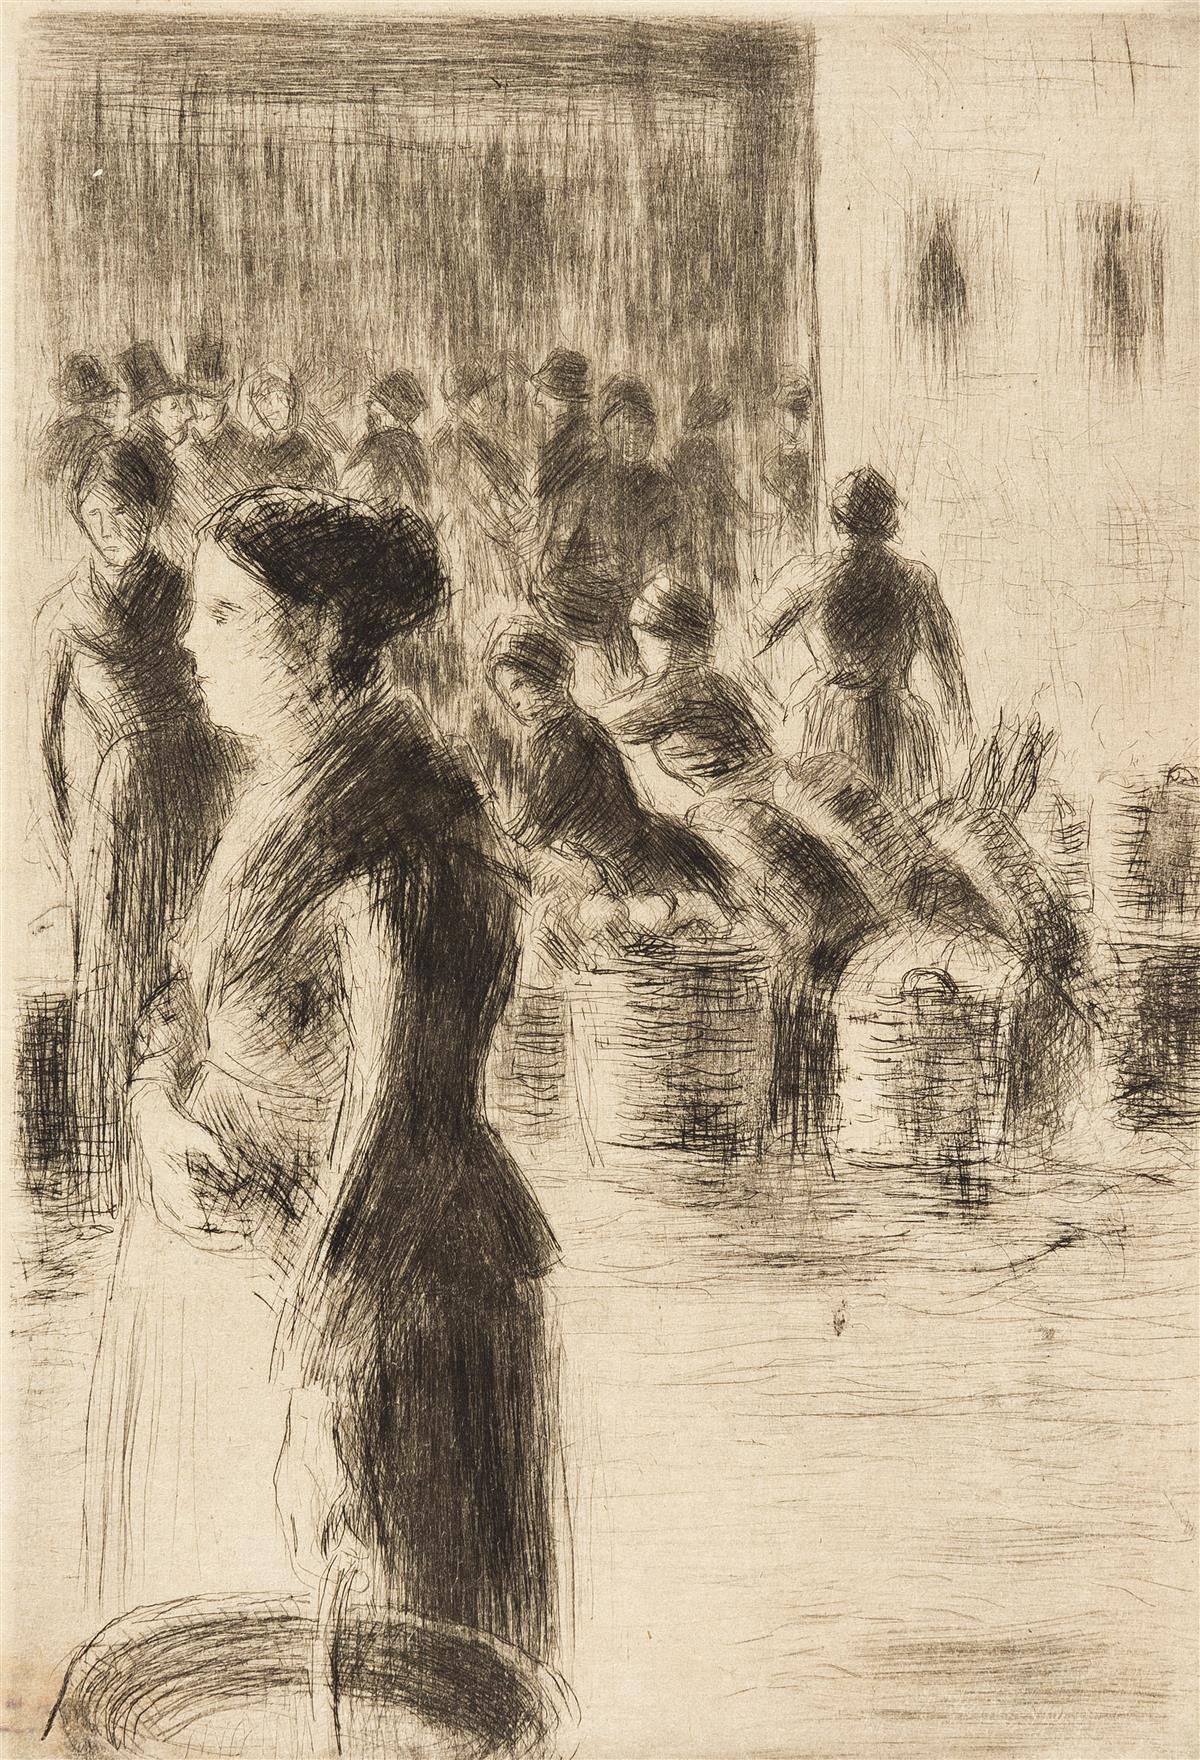 Abstract Print Camille Pissarro - La Bonne faisant son Marché